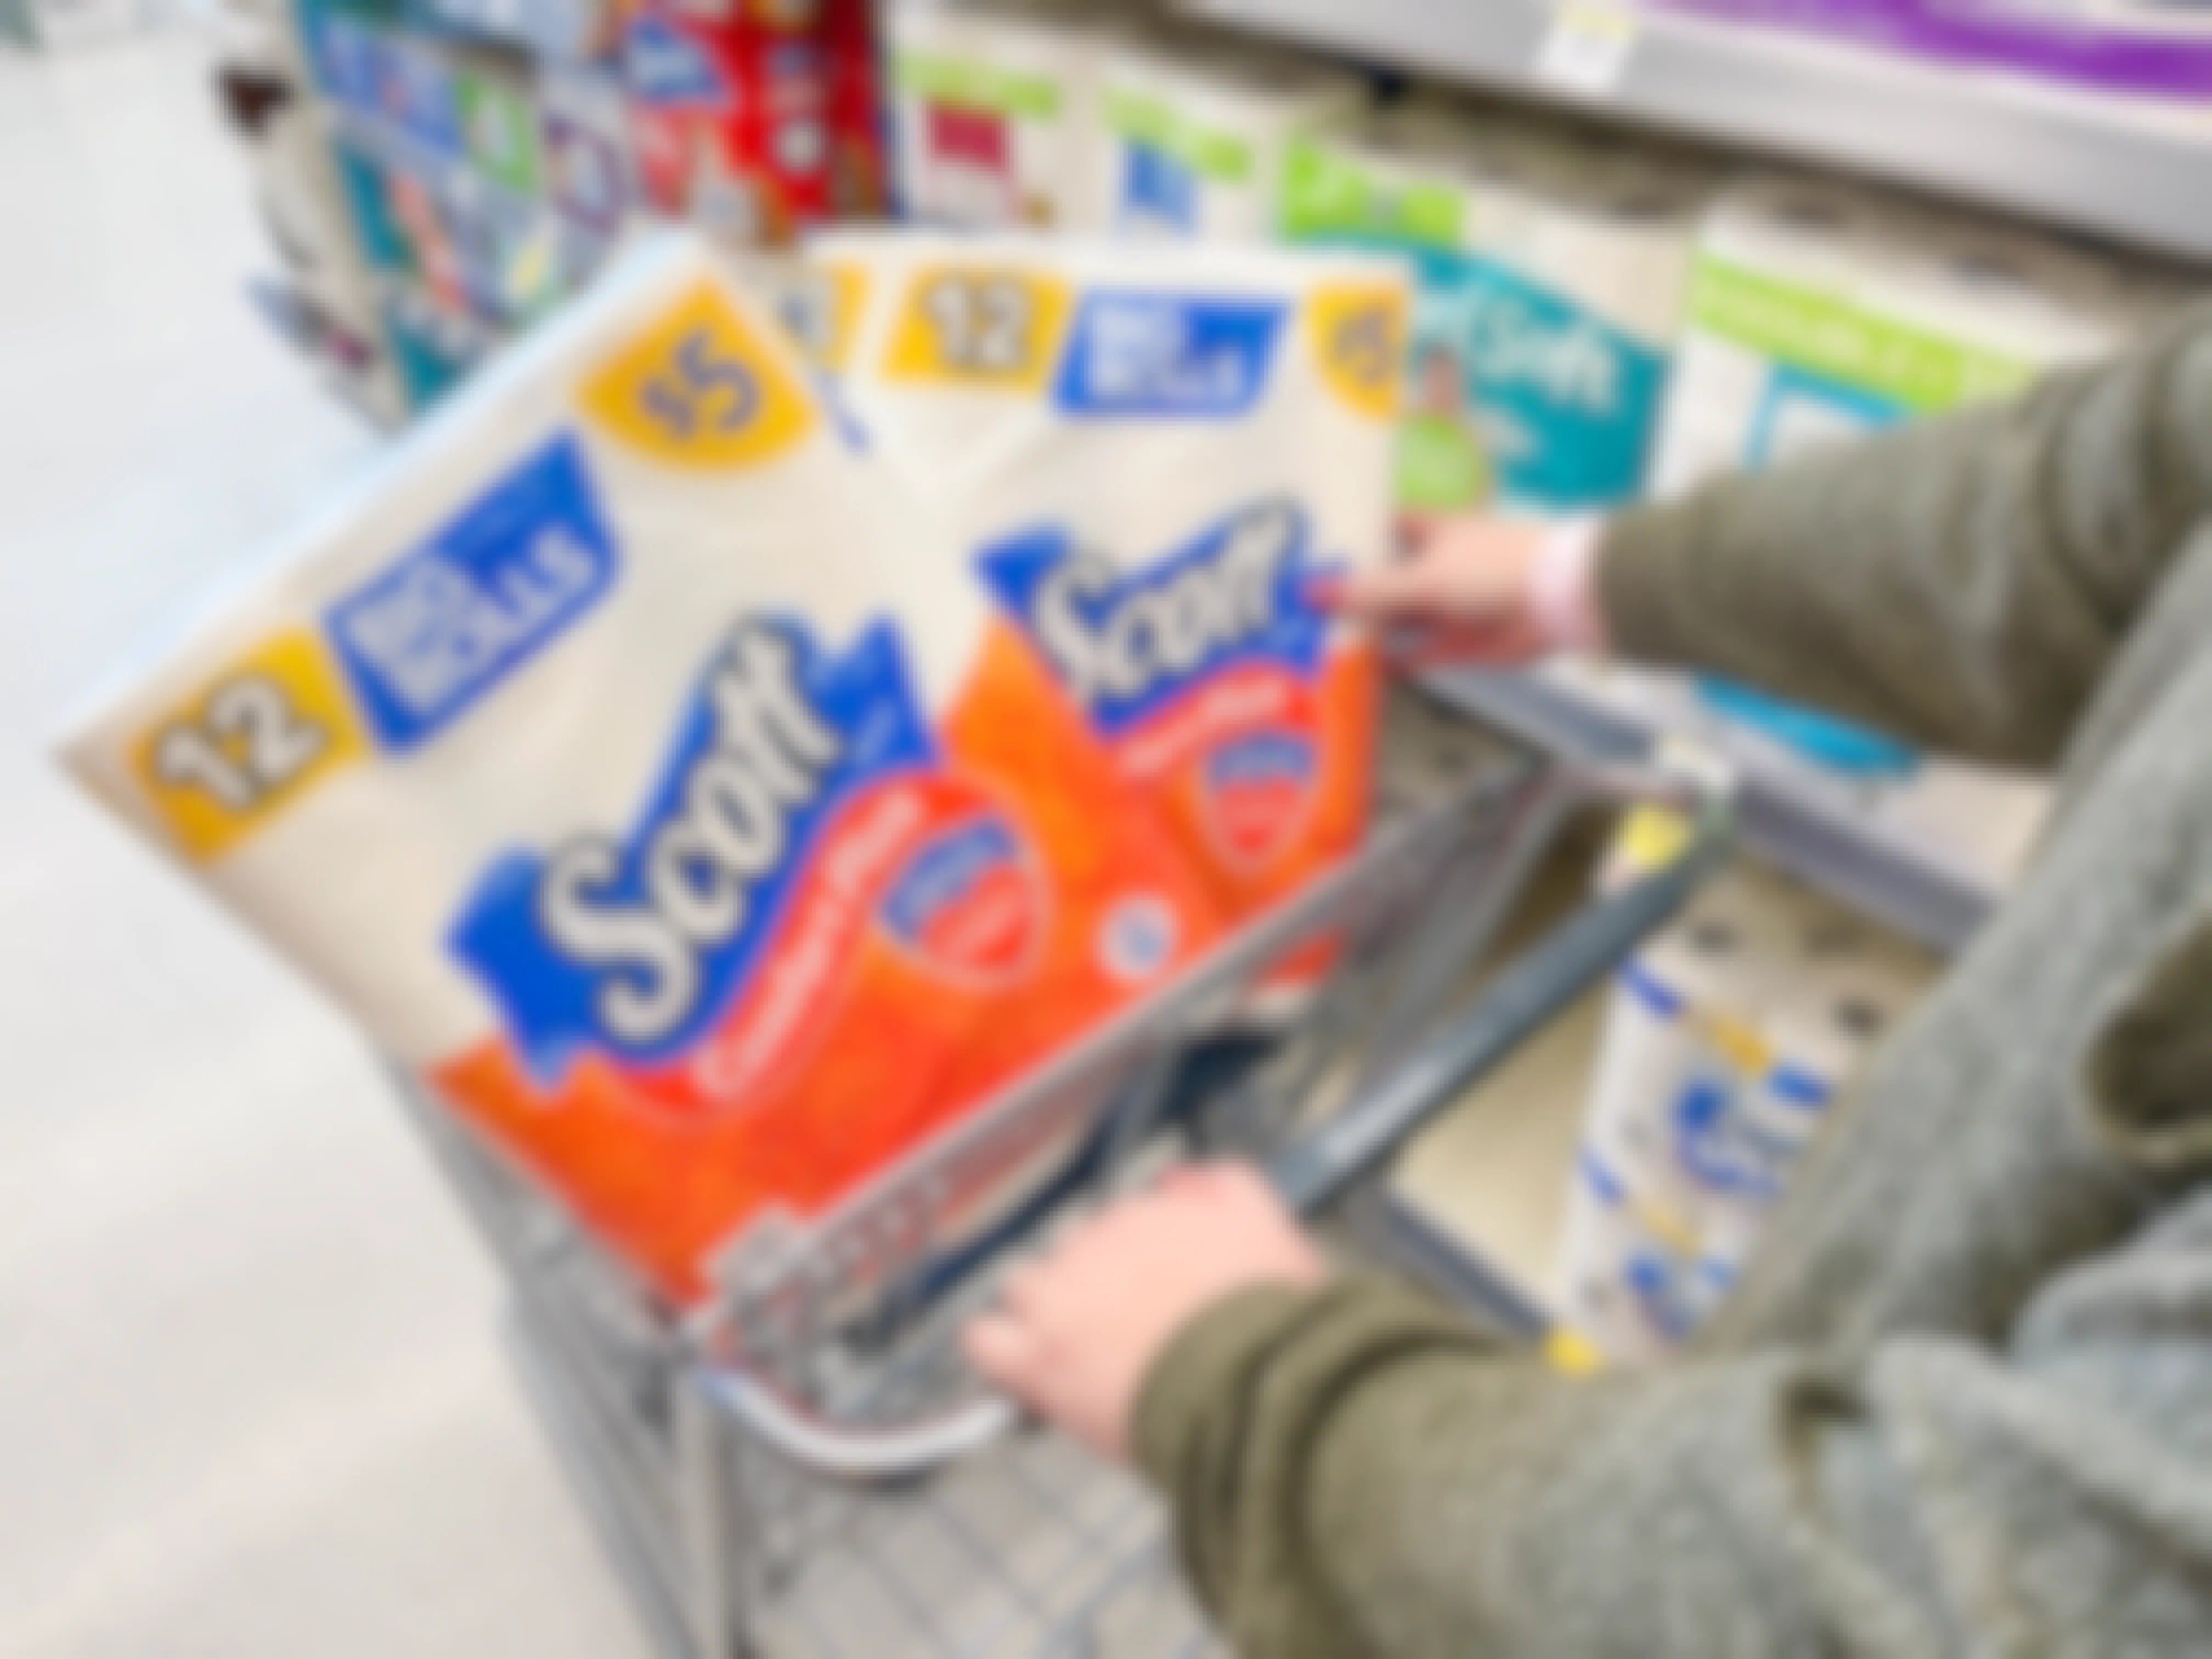 scott toilet paper in walgreens cart